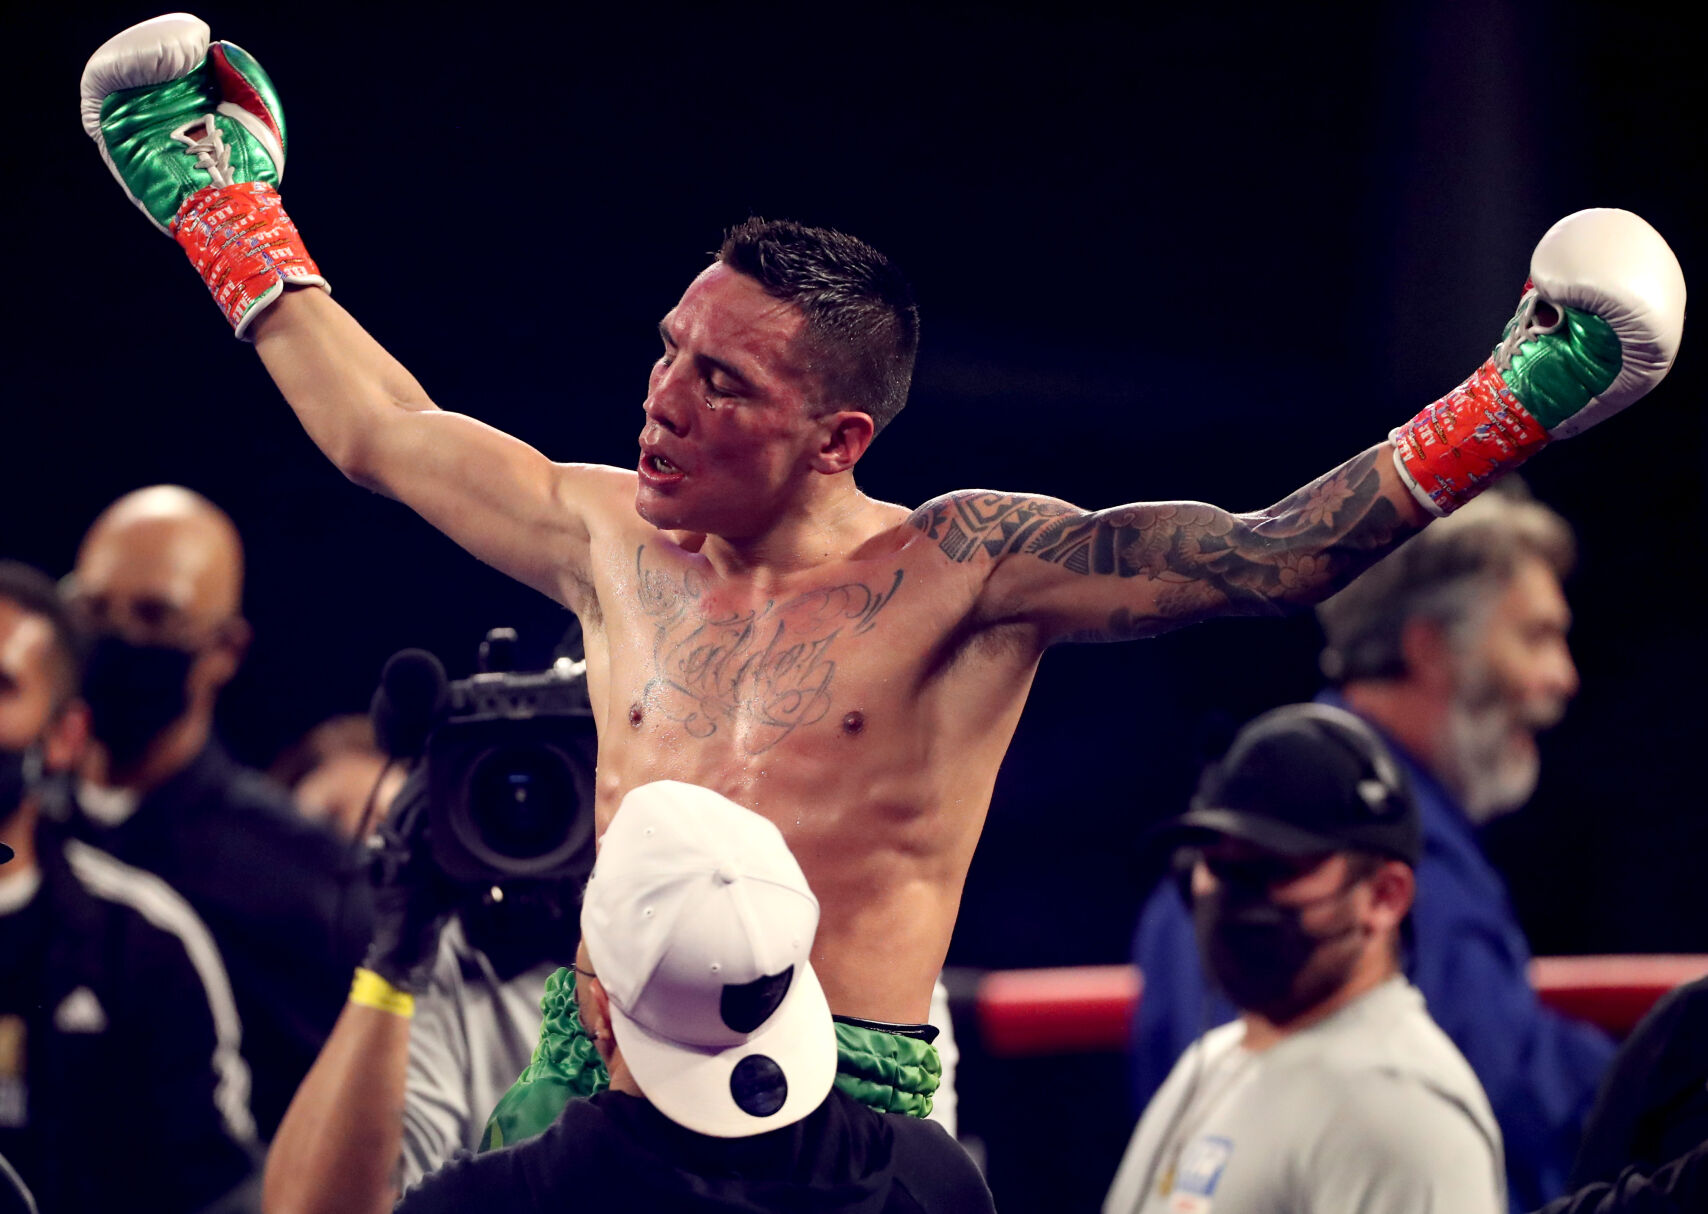 Tucson-bred boxer Oscar Valdez ready for Saturdays mega-fight against rival Shakur Stevenson